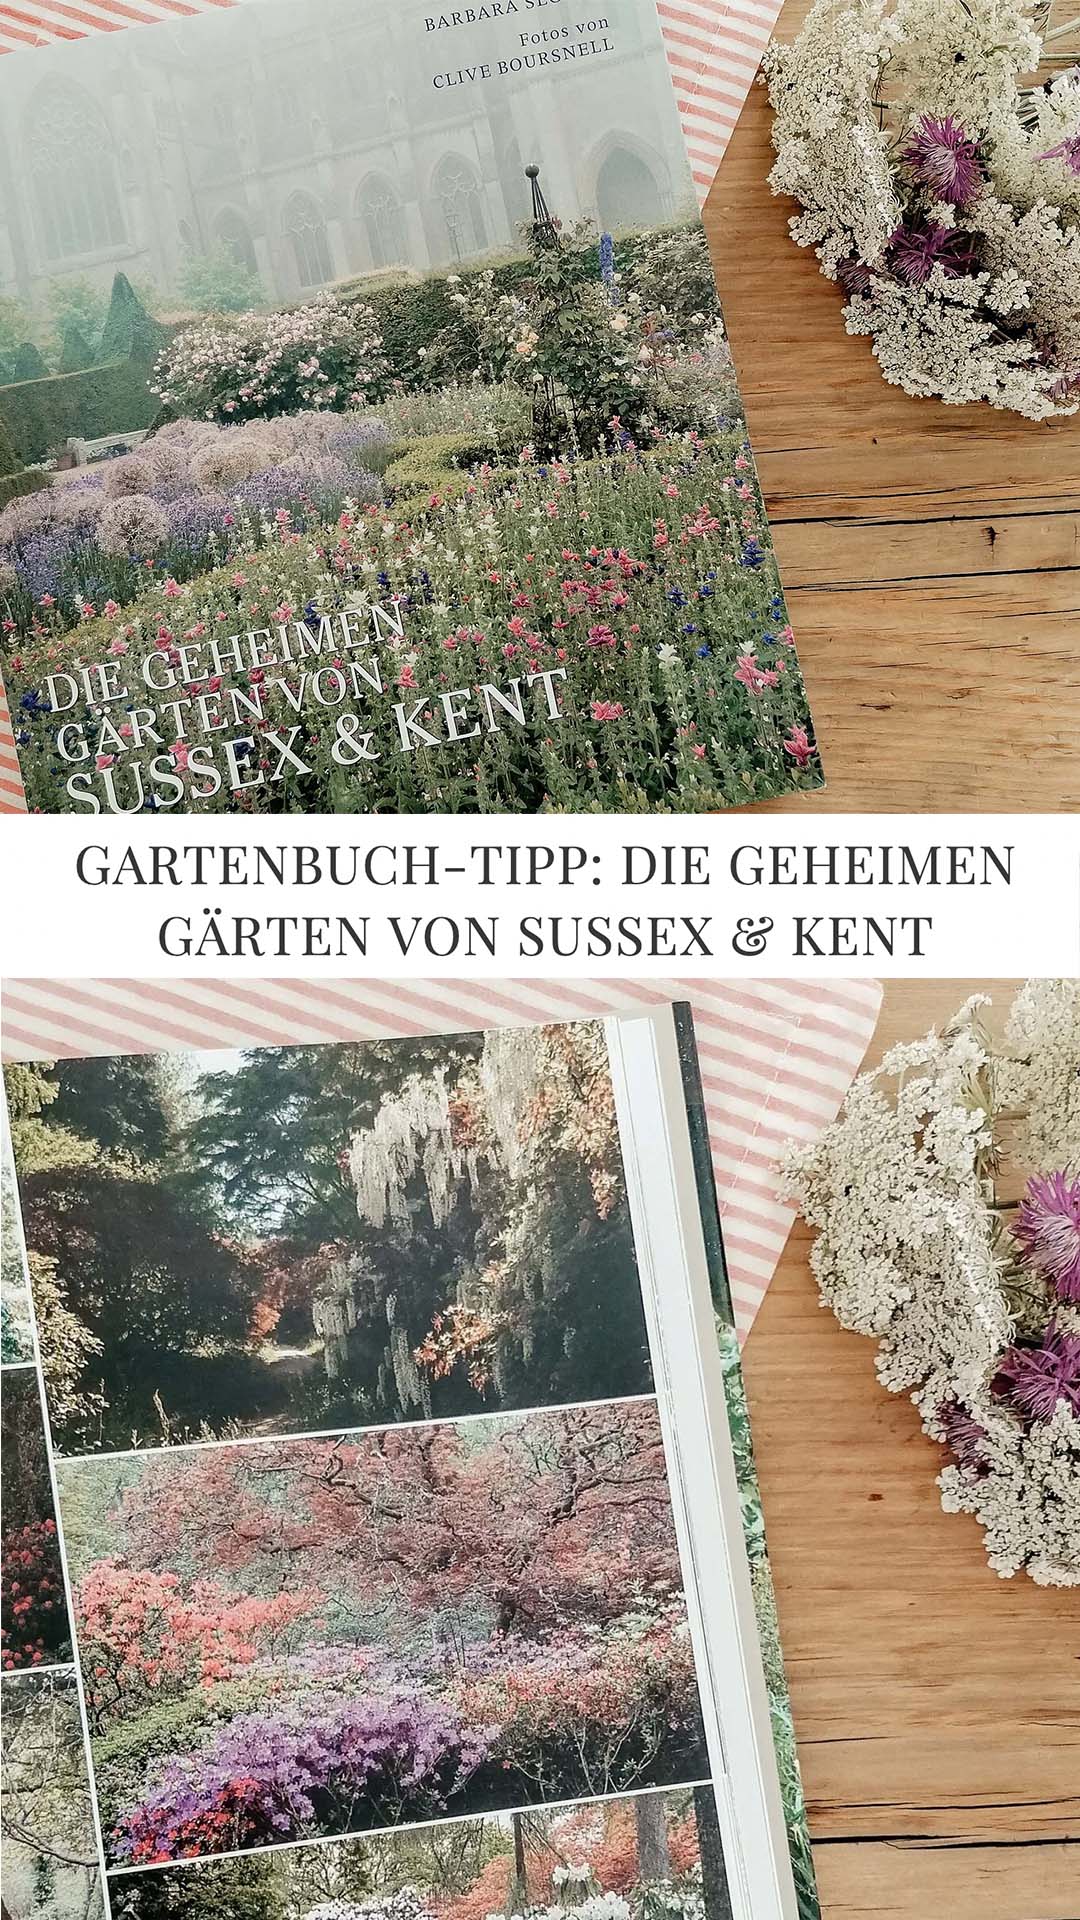 Die geheimen Gärten von Sussex & Kent